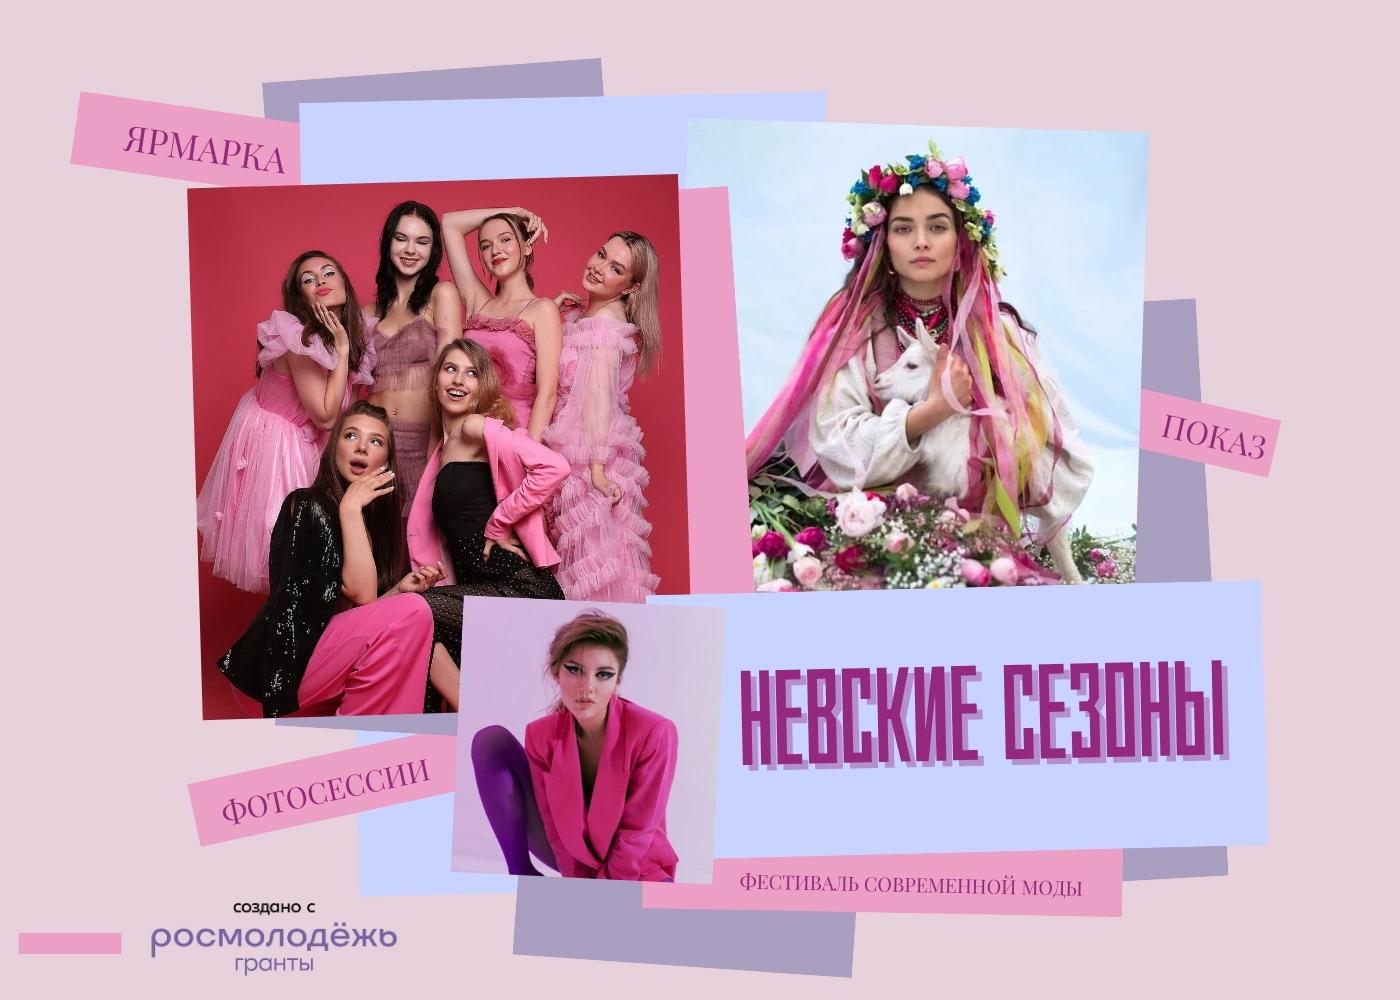 Фестиваль современной моды "Невские сезоны" объявляет о начале Всероссийского конкурса дизайнеров одежды и фотографов! 